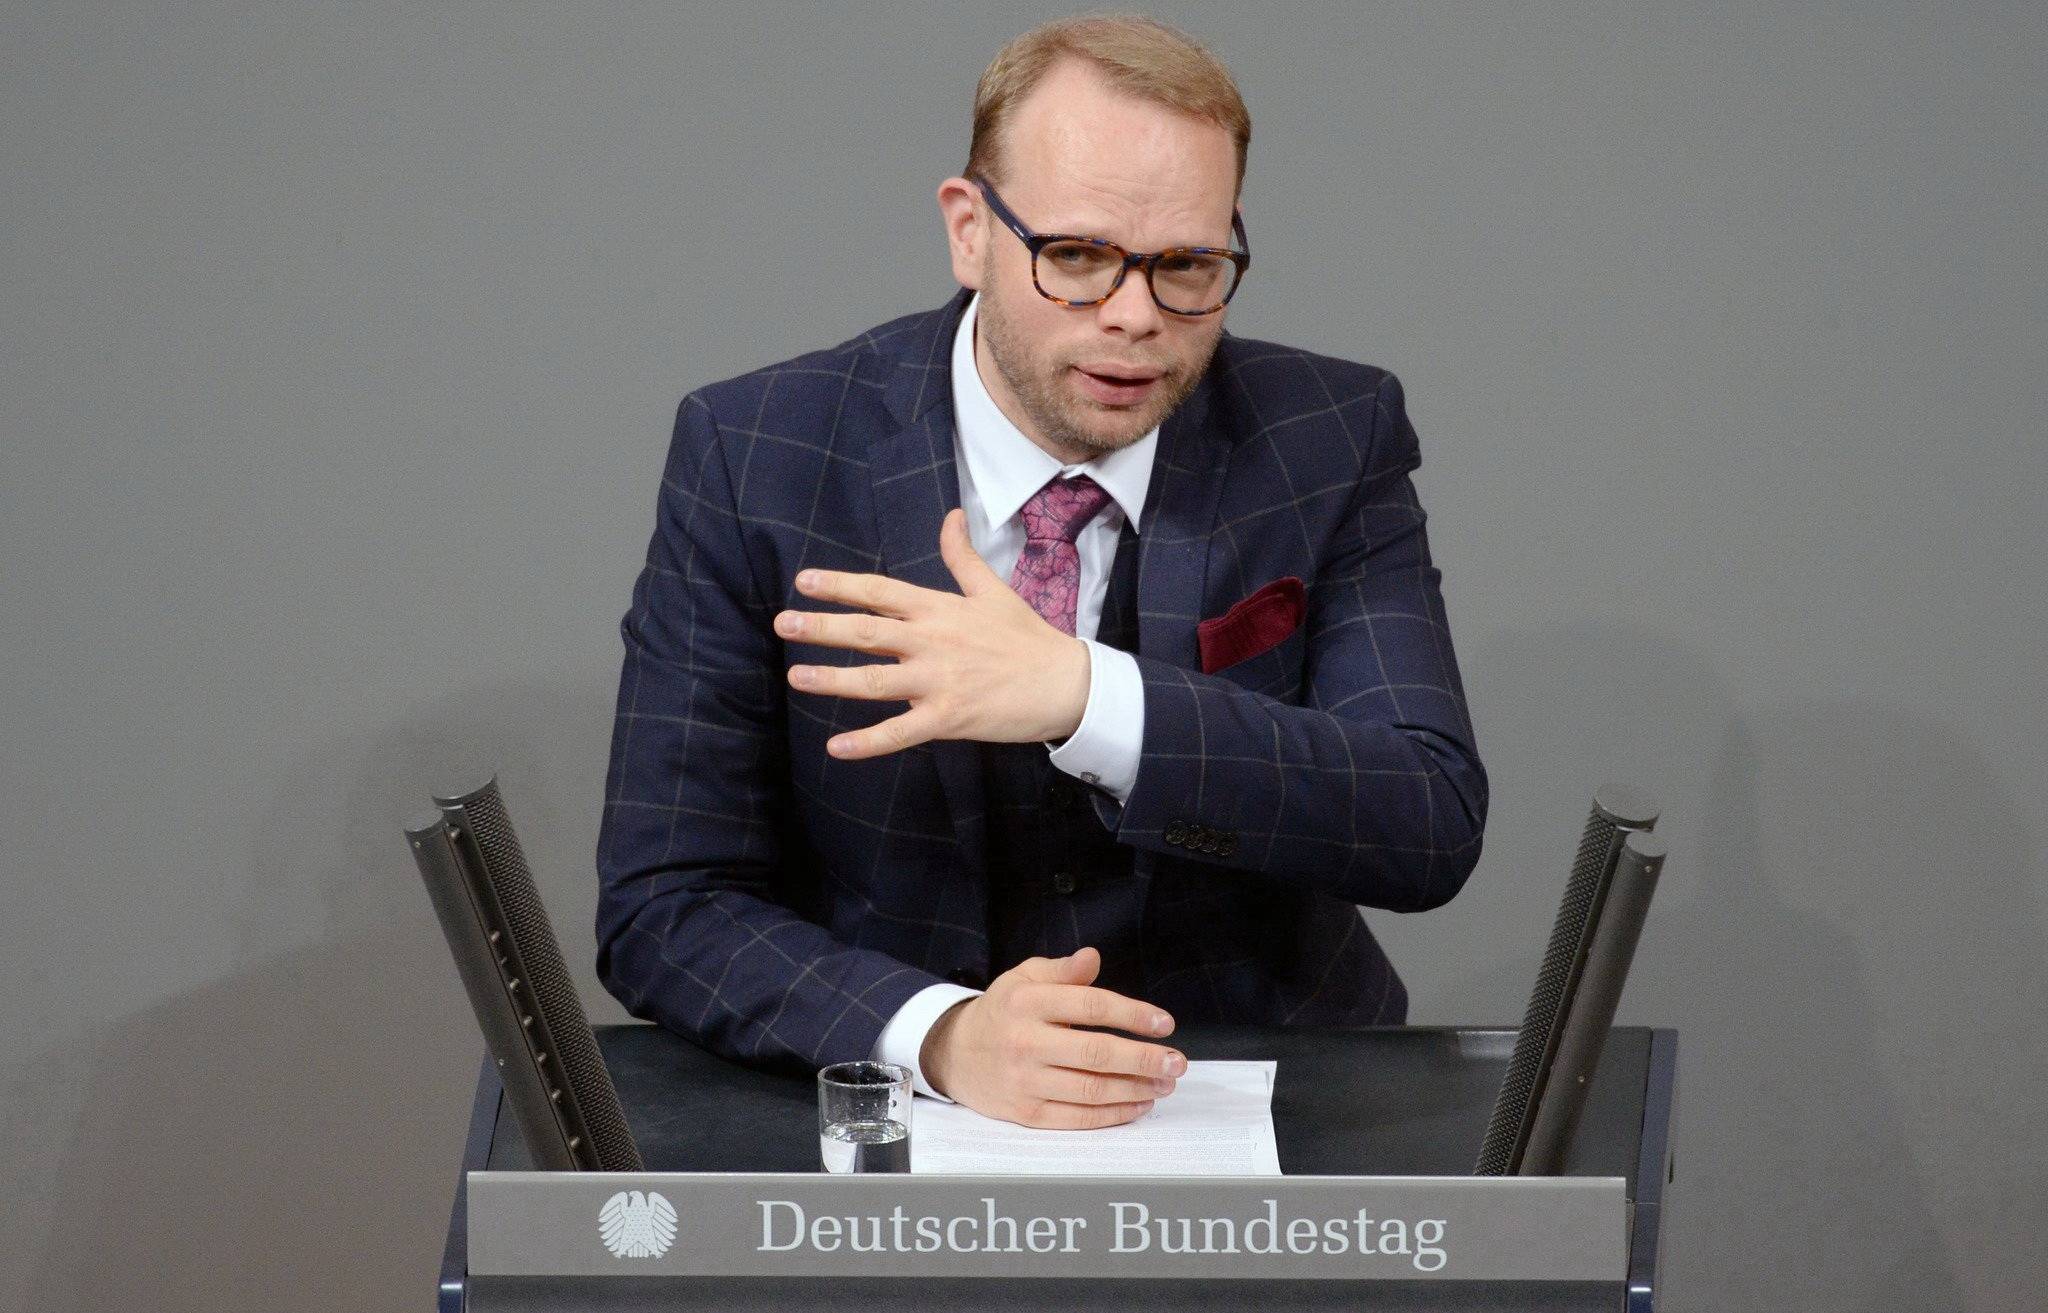  Wuppertals SPD-Bundestagsabgeordneter Helge Lindh ruft zur Teilnahme am bundesweit ausgelobten Demokratie-Preis auf.  